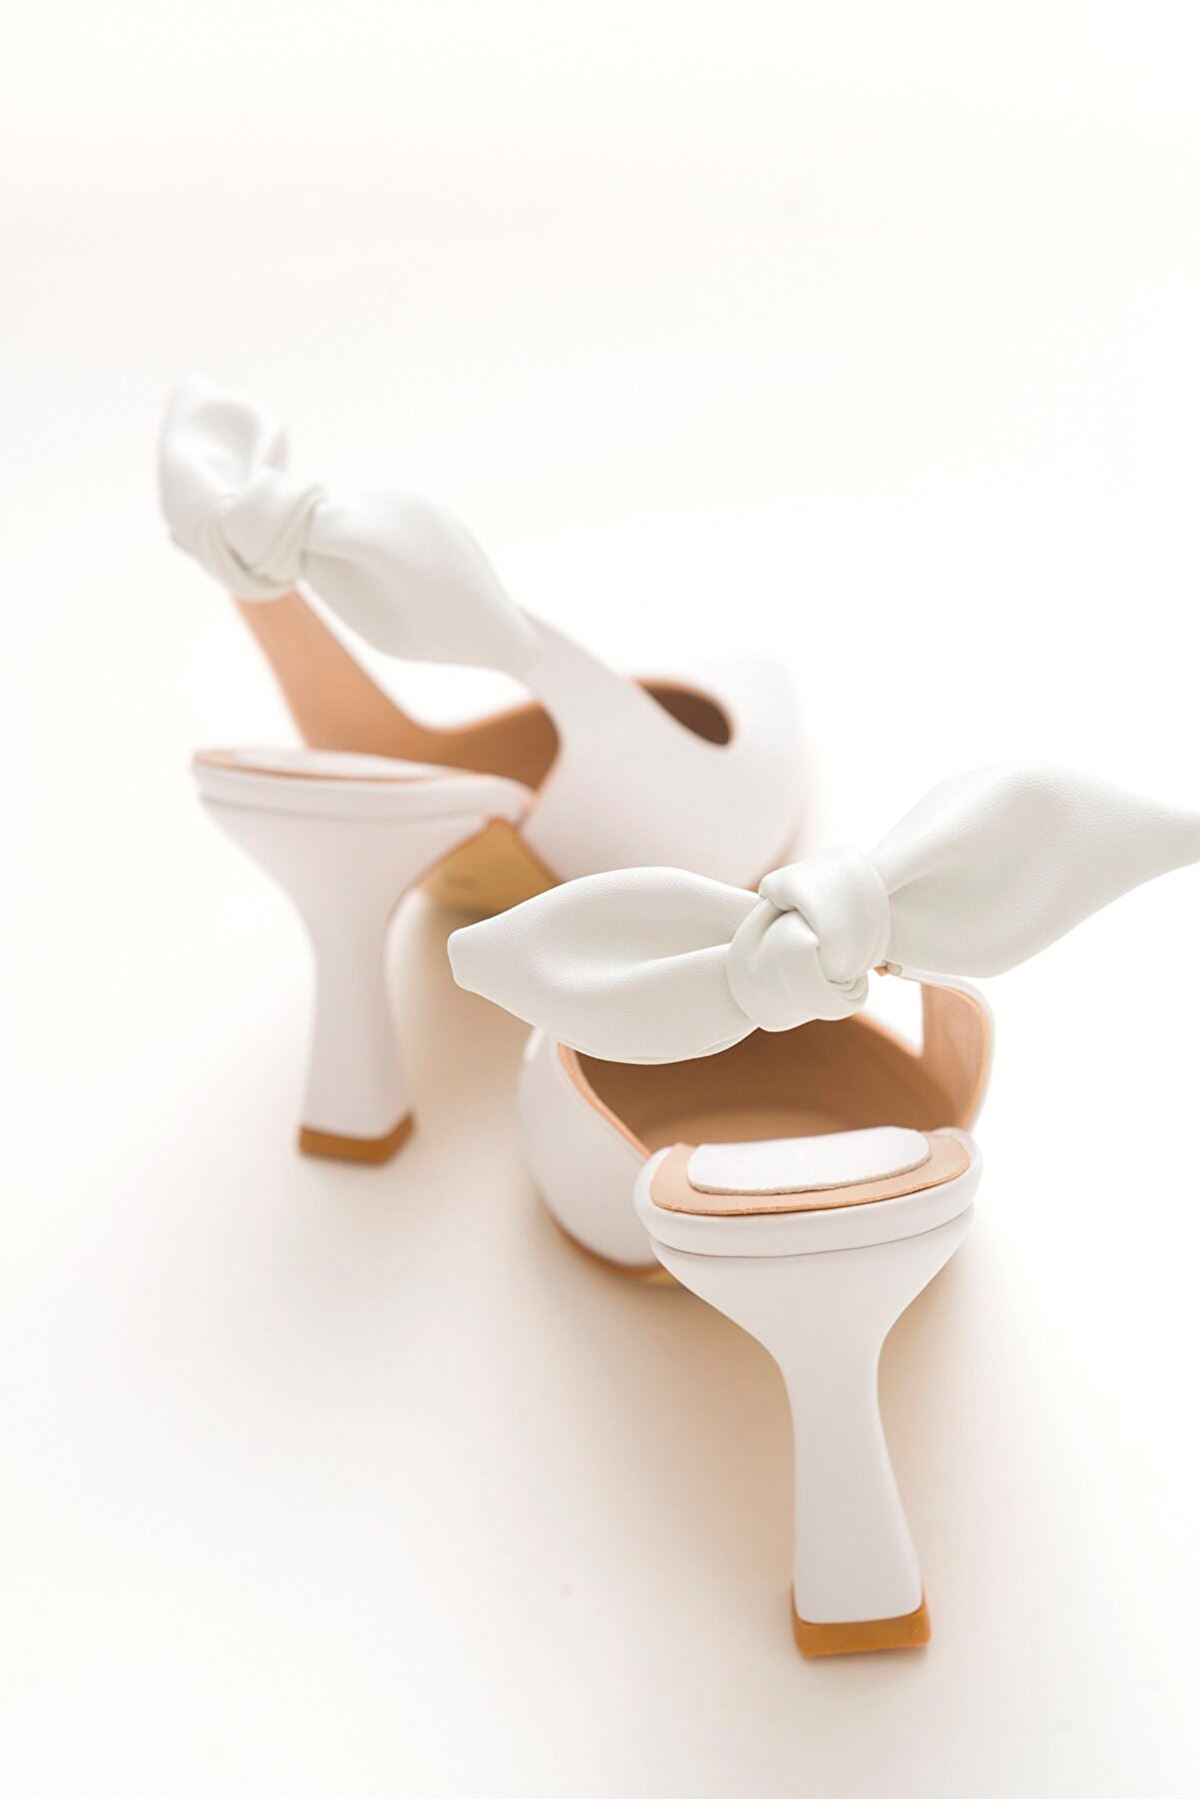 Kadın Klasik Topuklu Fiyonklu Ayakkabı Gina Gate Shoes-Beyaz